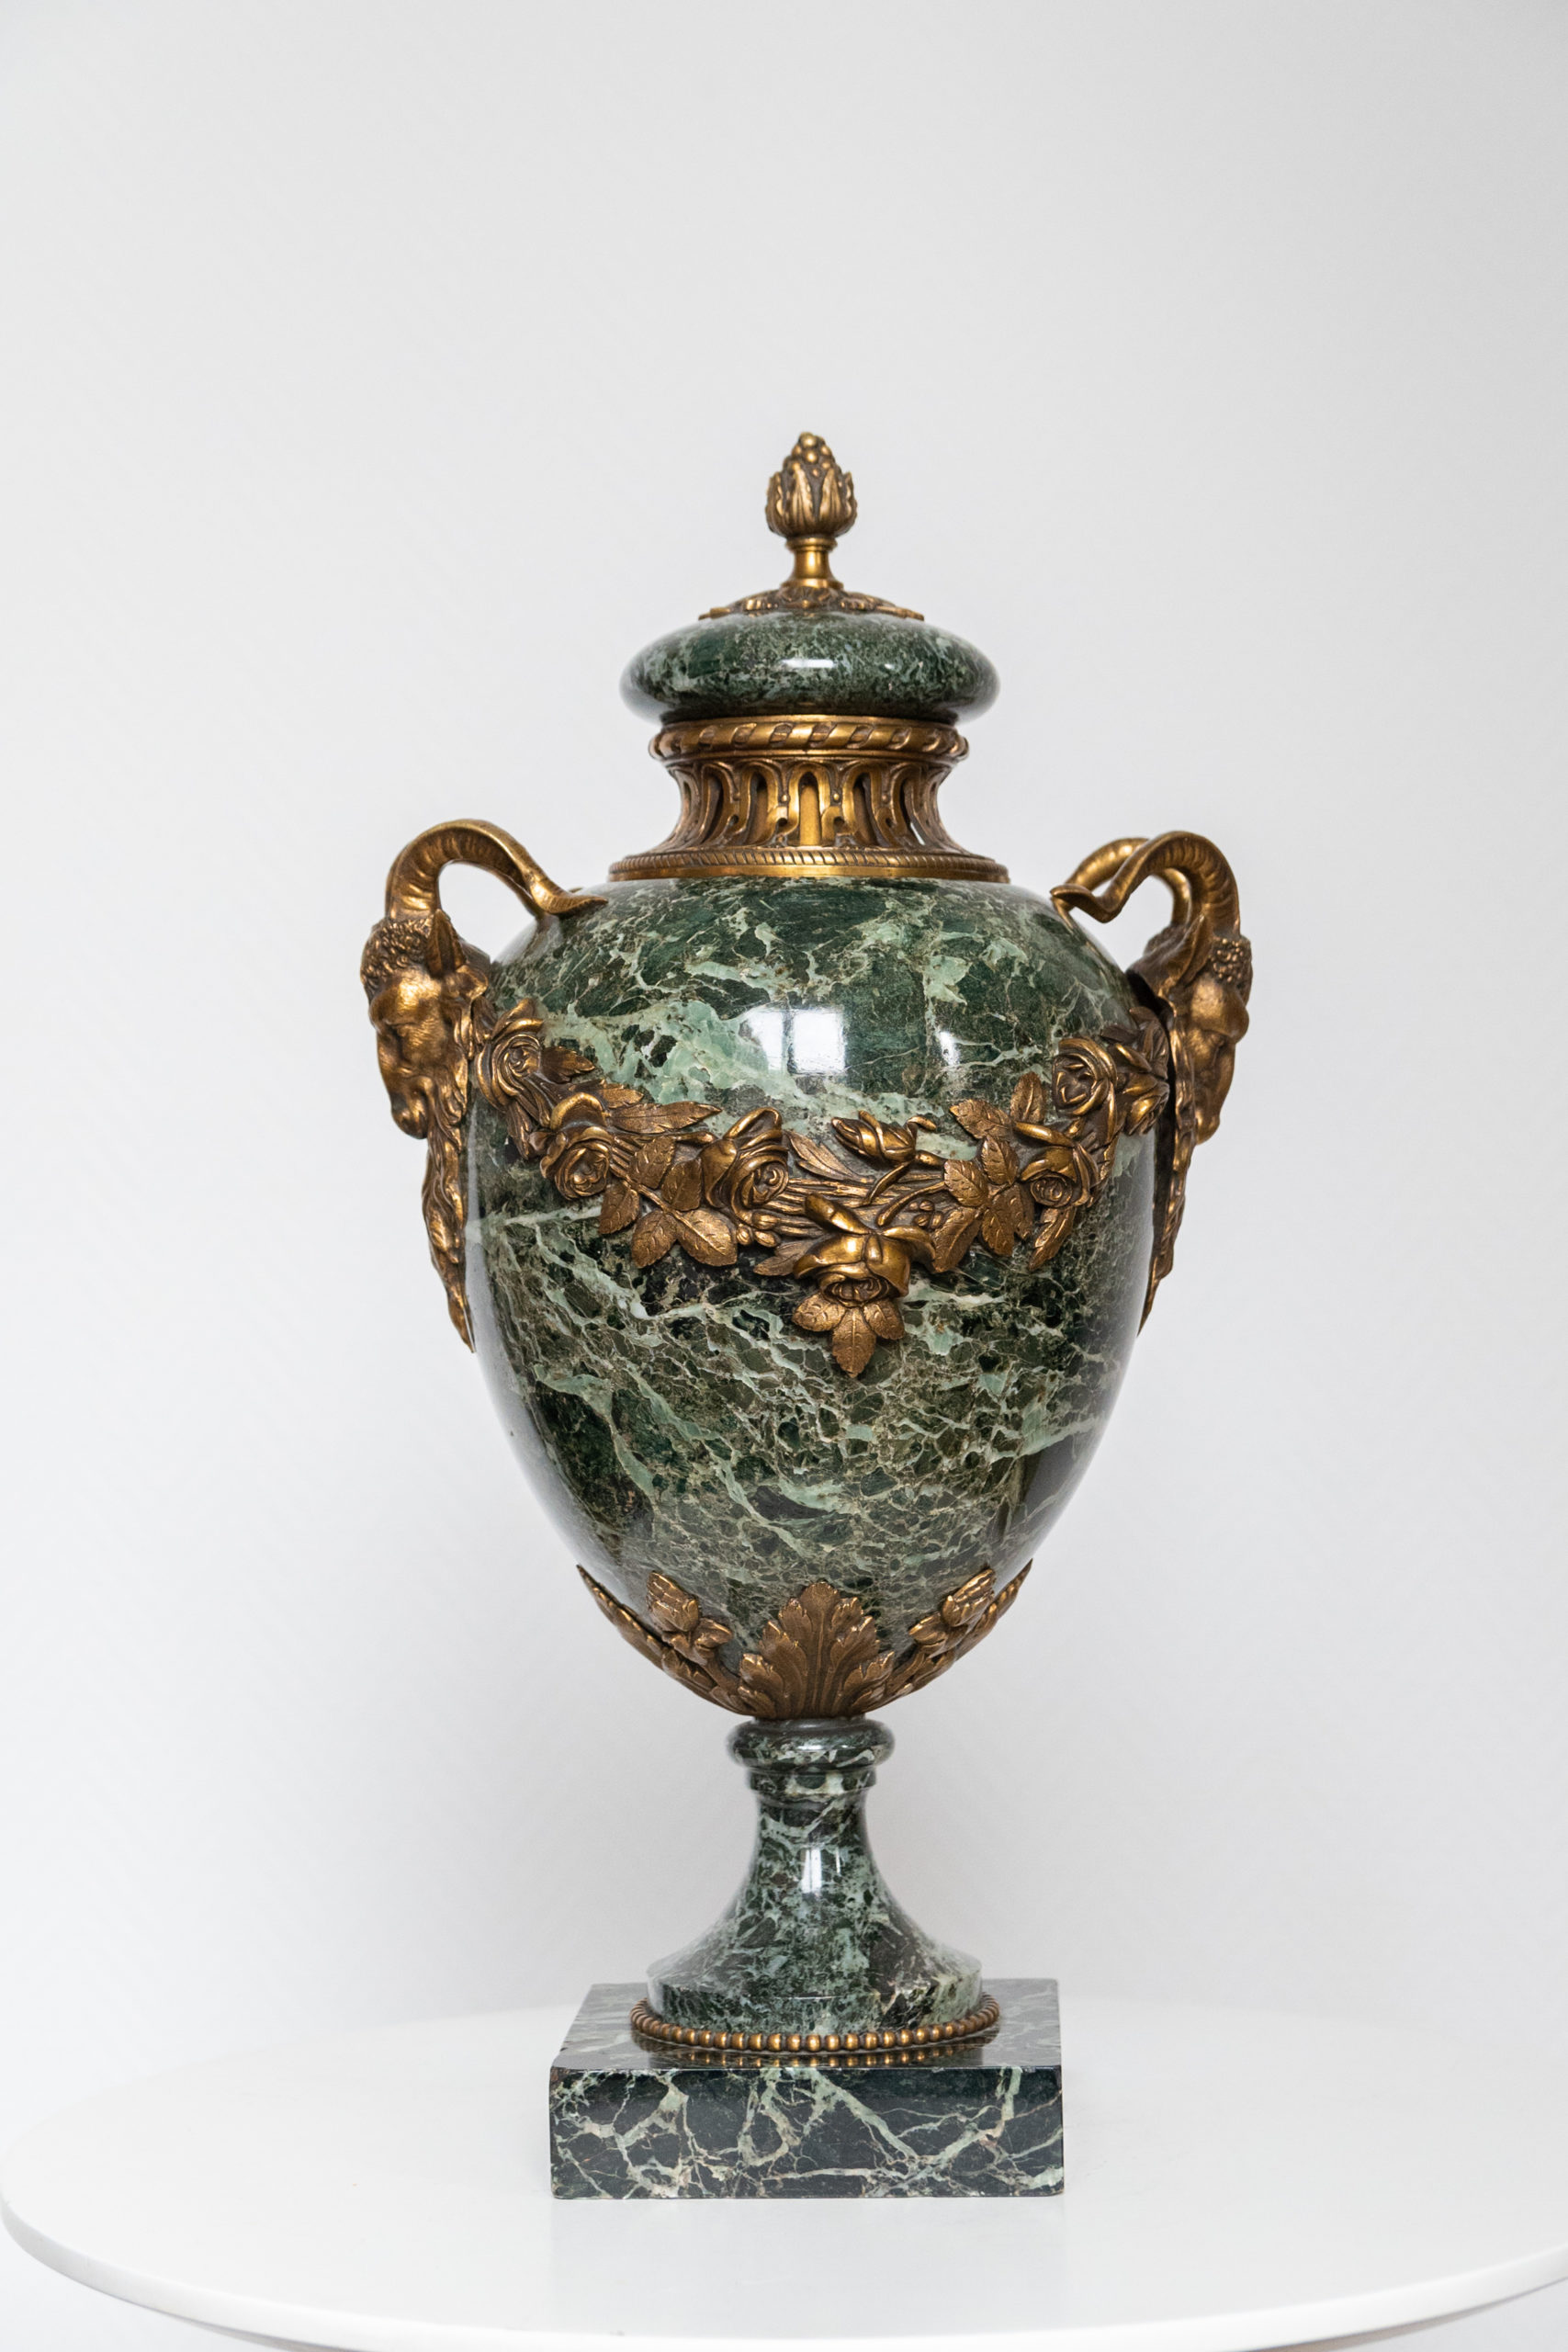 cassolette-vase-marbre-vert-bélier-bronze-louis-xv-aurore-morisse-affaire-conclue-antiquaire-liège1